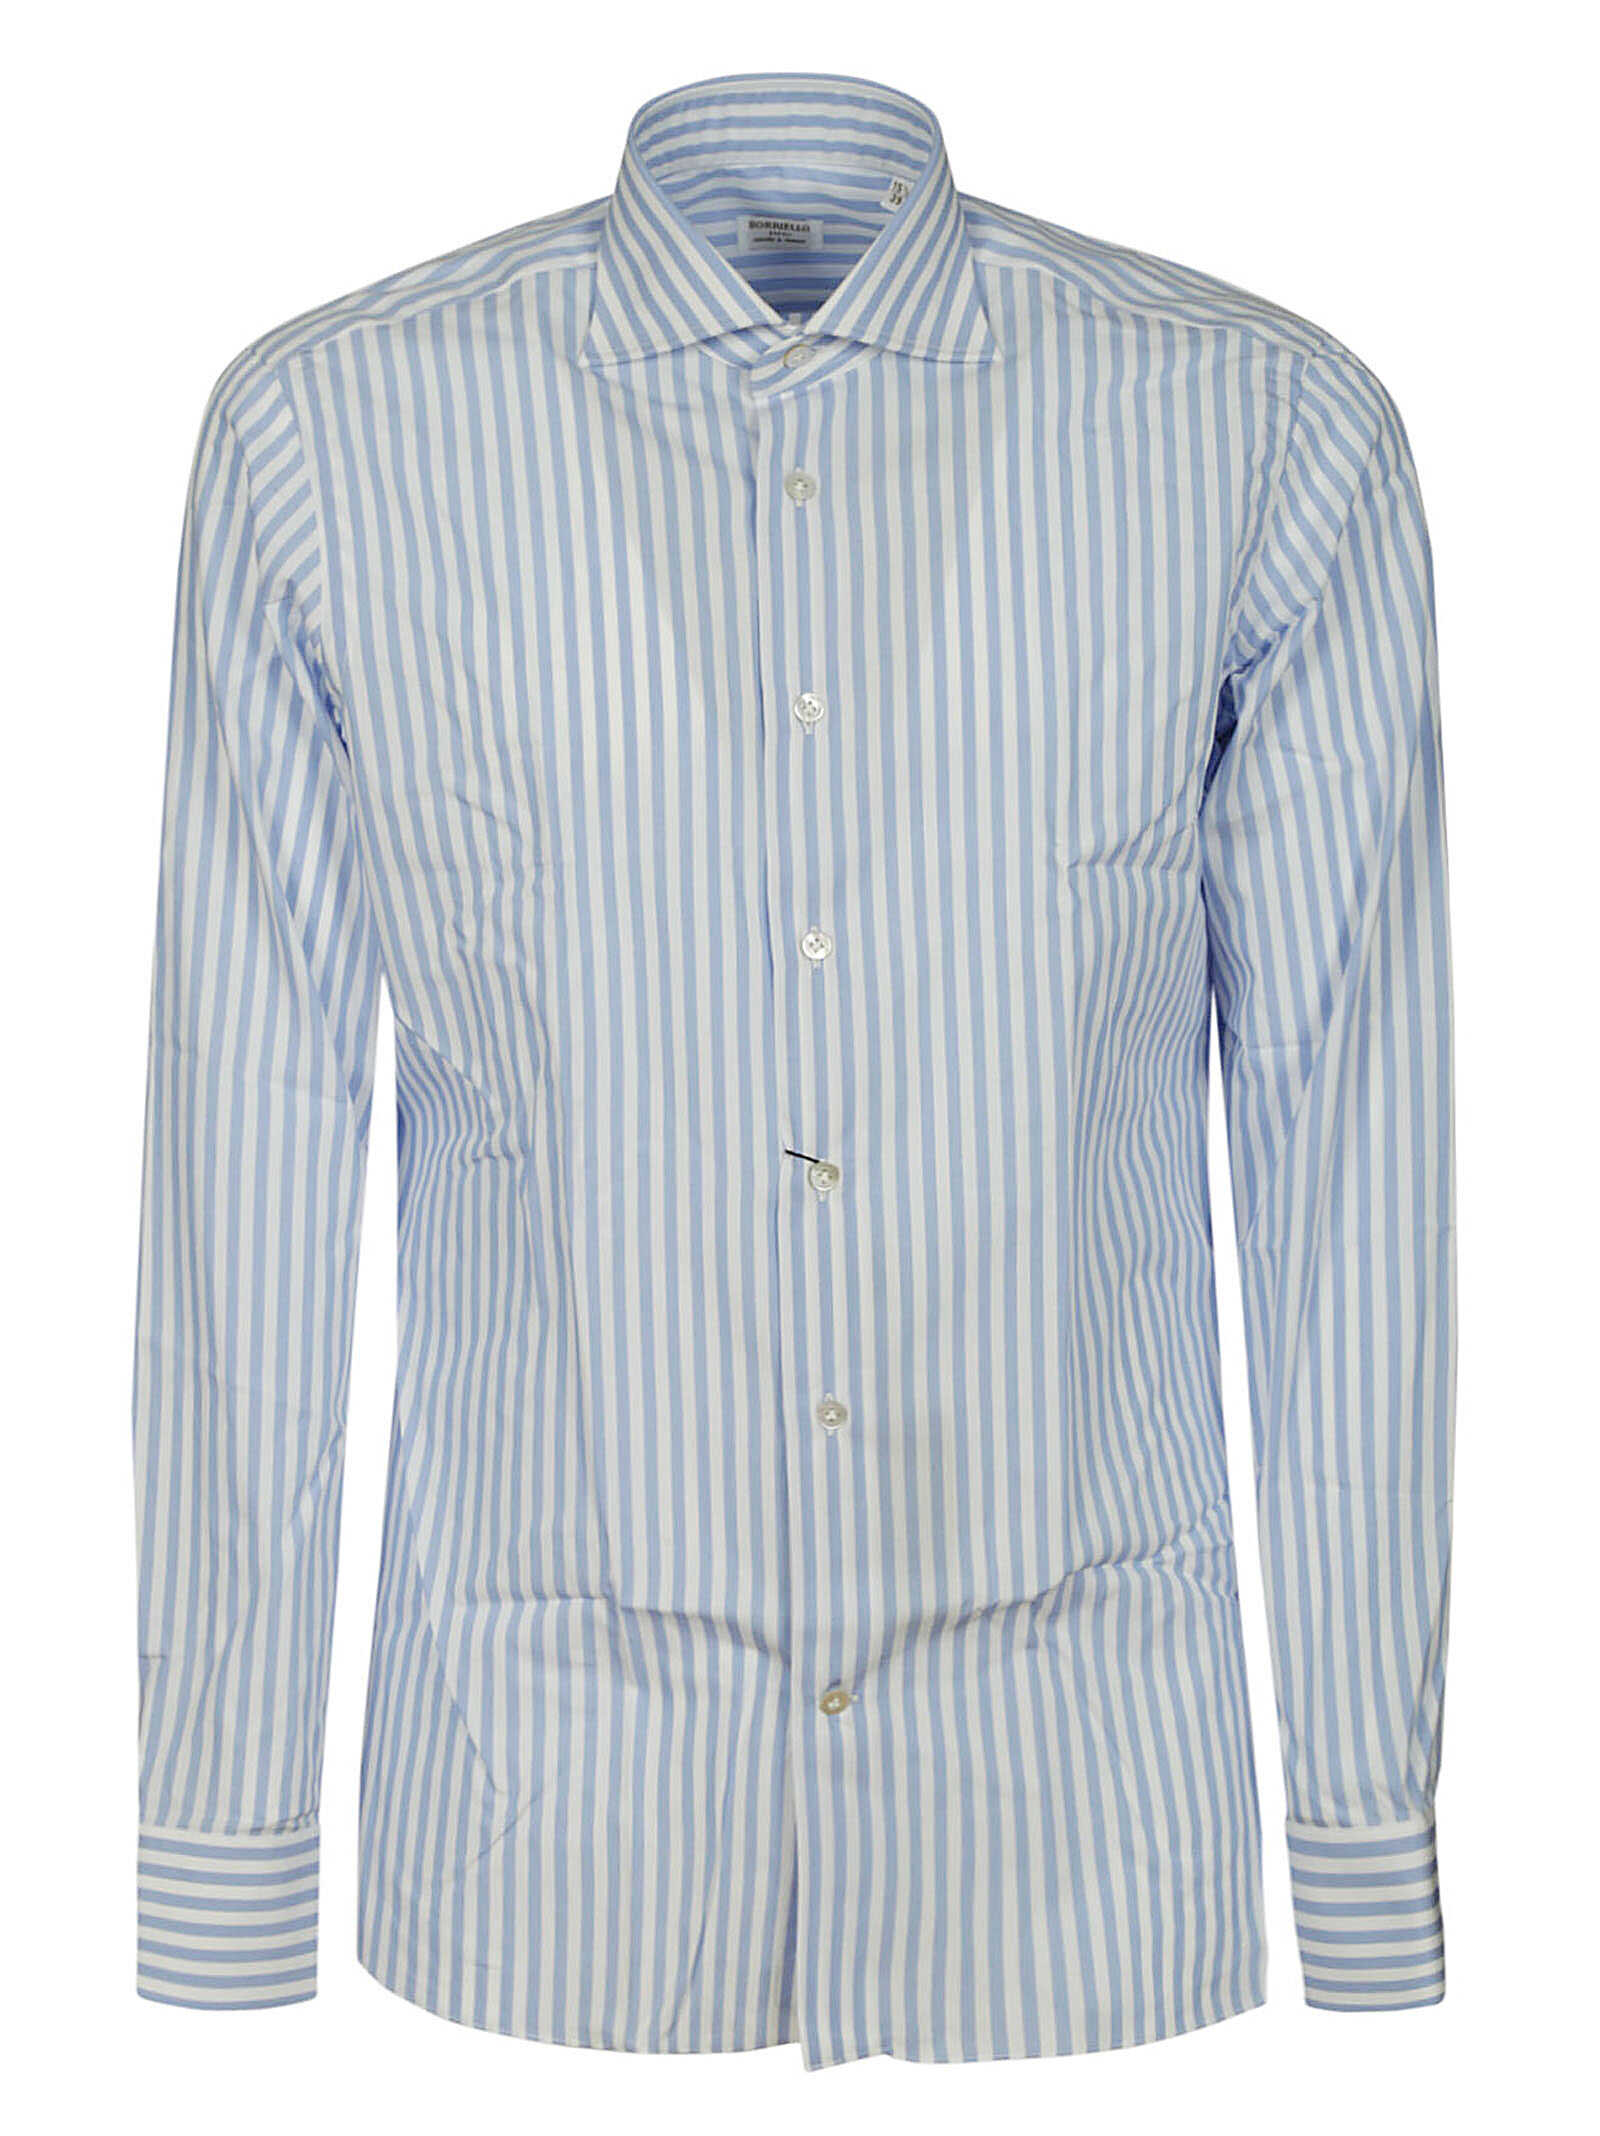 BORRIELLO Borriello Shirt 14001 1 STRIPE BLUE Stripe Blue